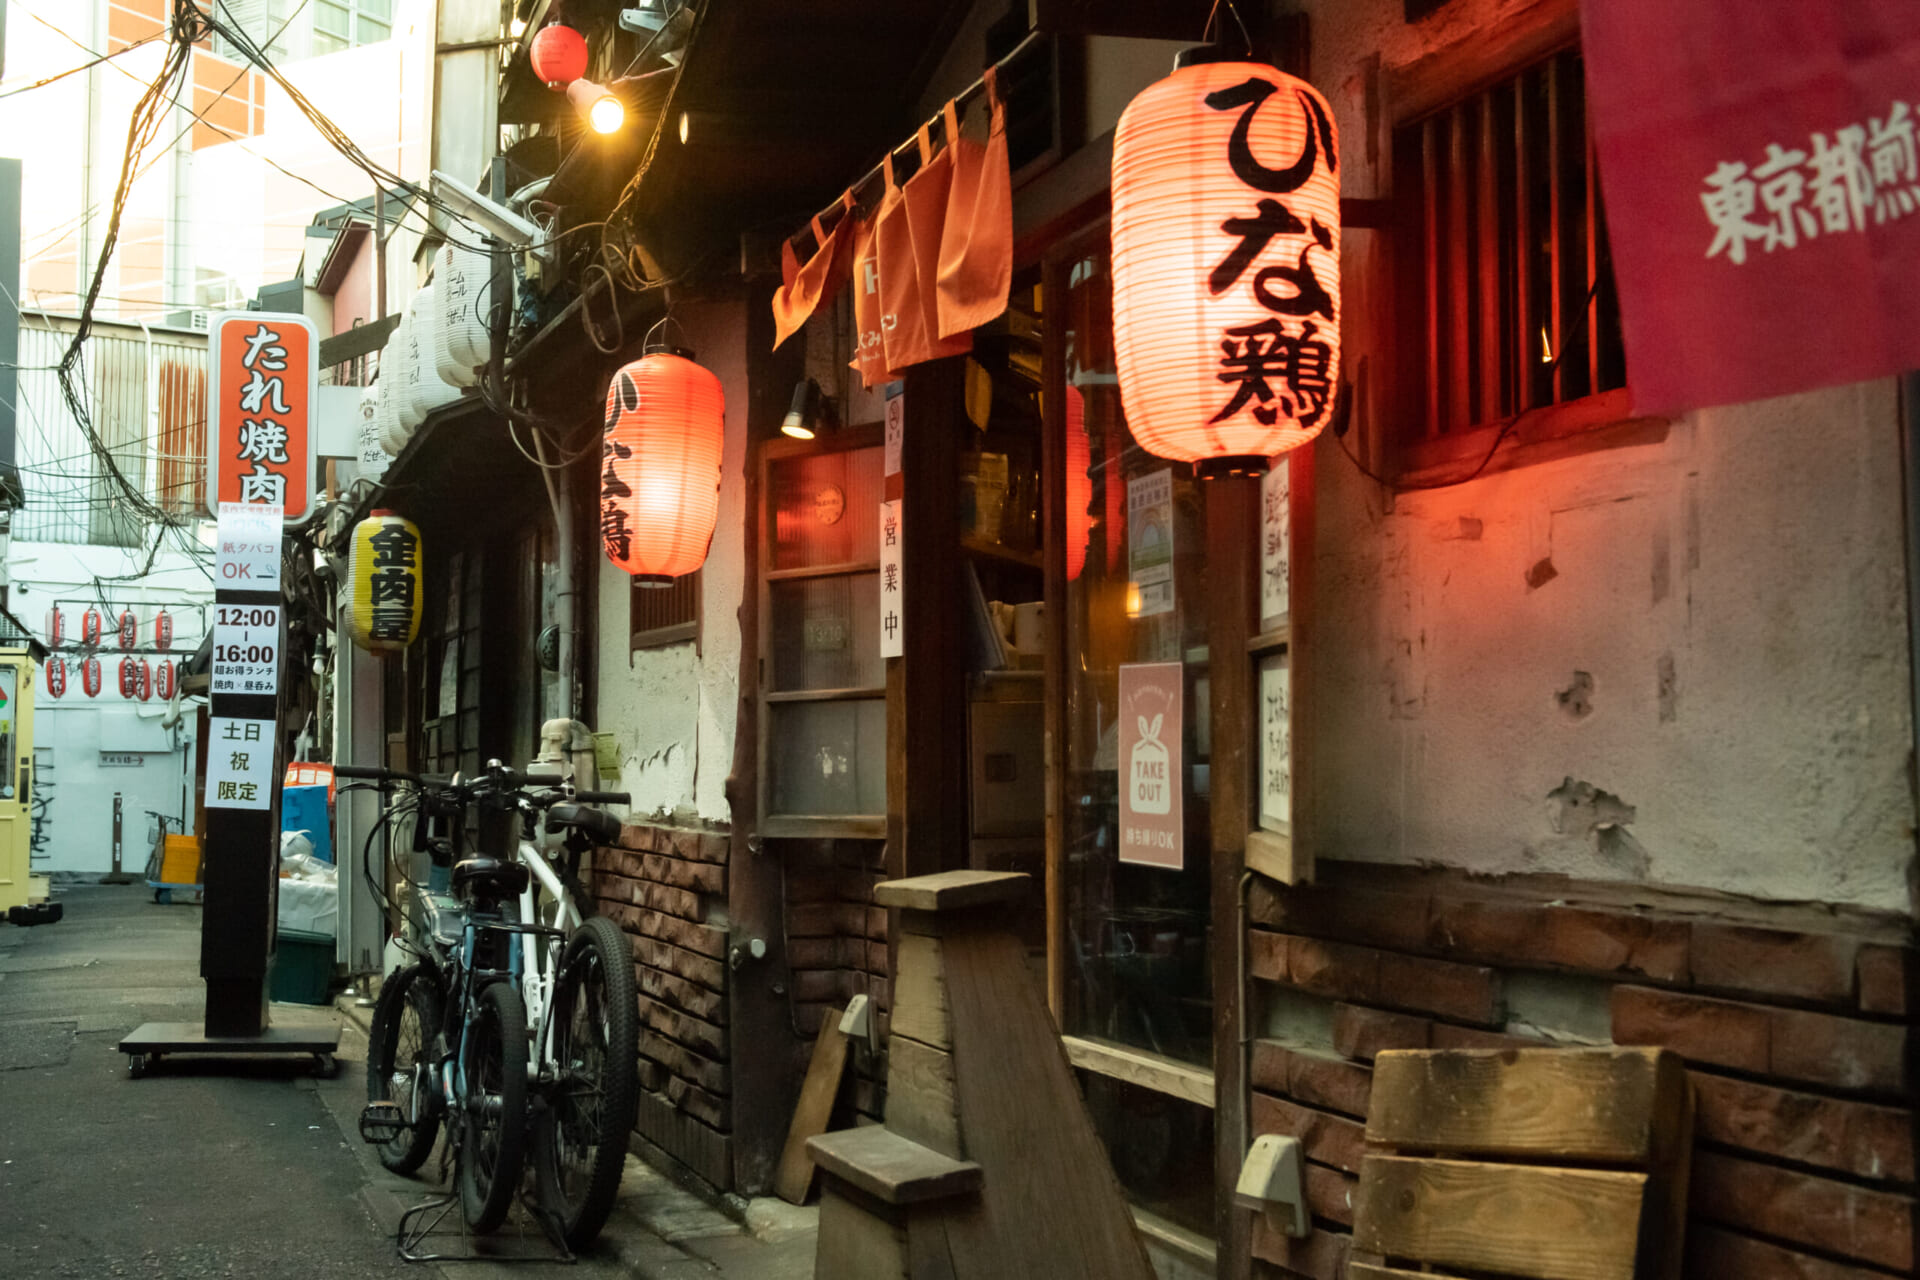 古き良き面影を残す三軒茶屋の一角に 遊びゴコロあふれる昭和な☆居酒屋、発見！